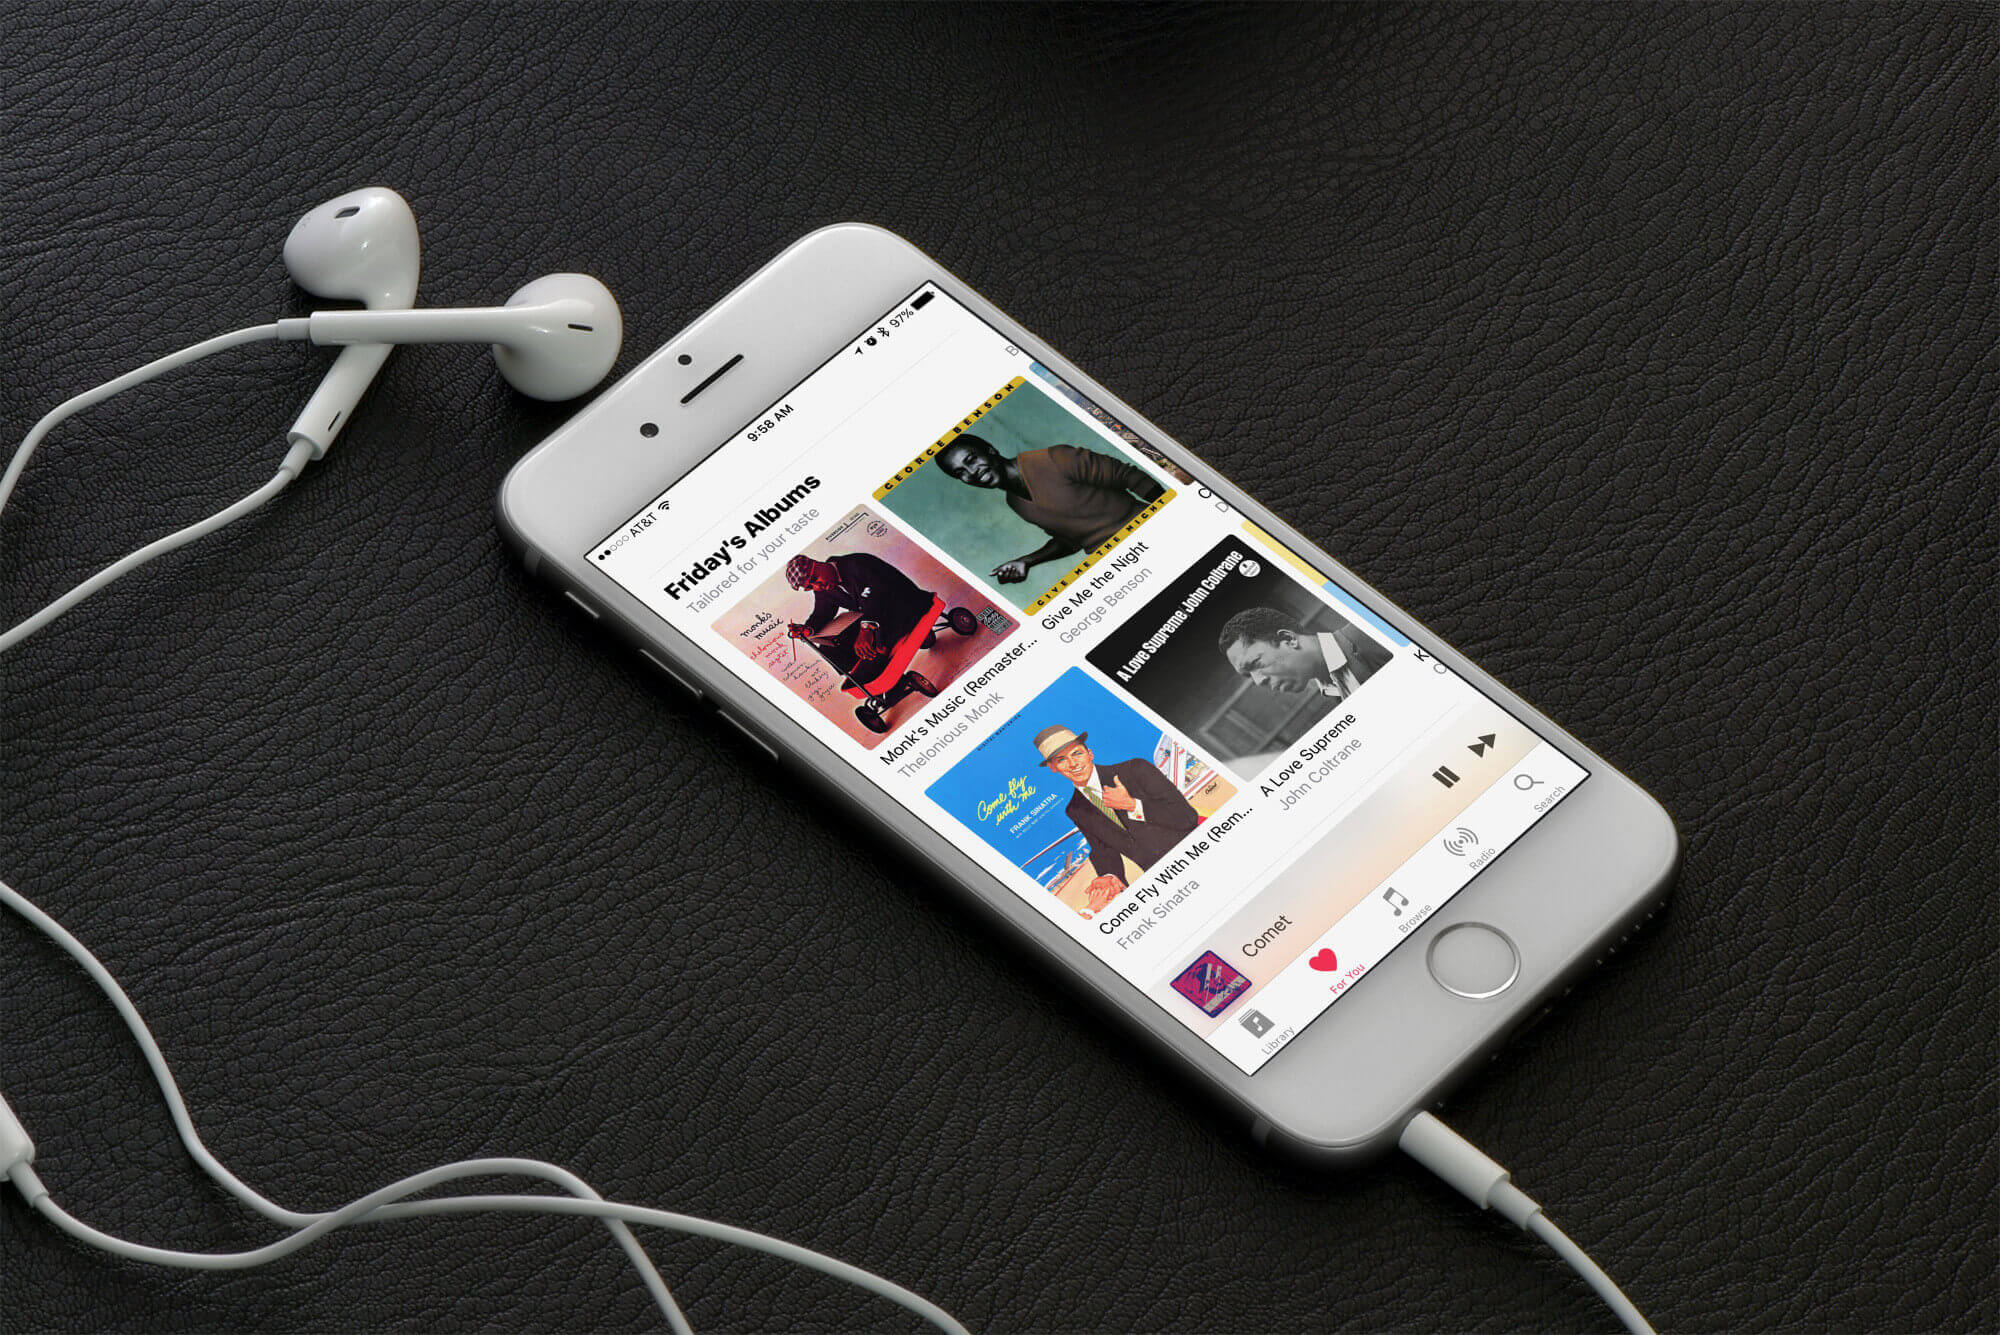 Cele mai bune aplicatii muzicale pentru iOS si Android